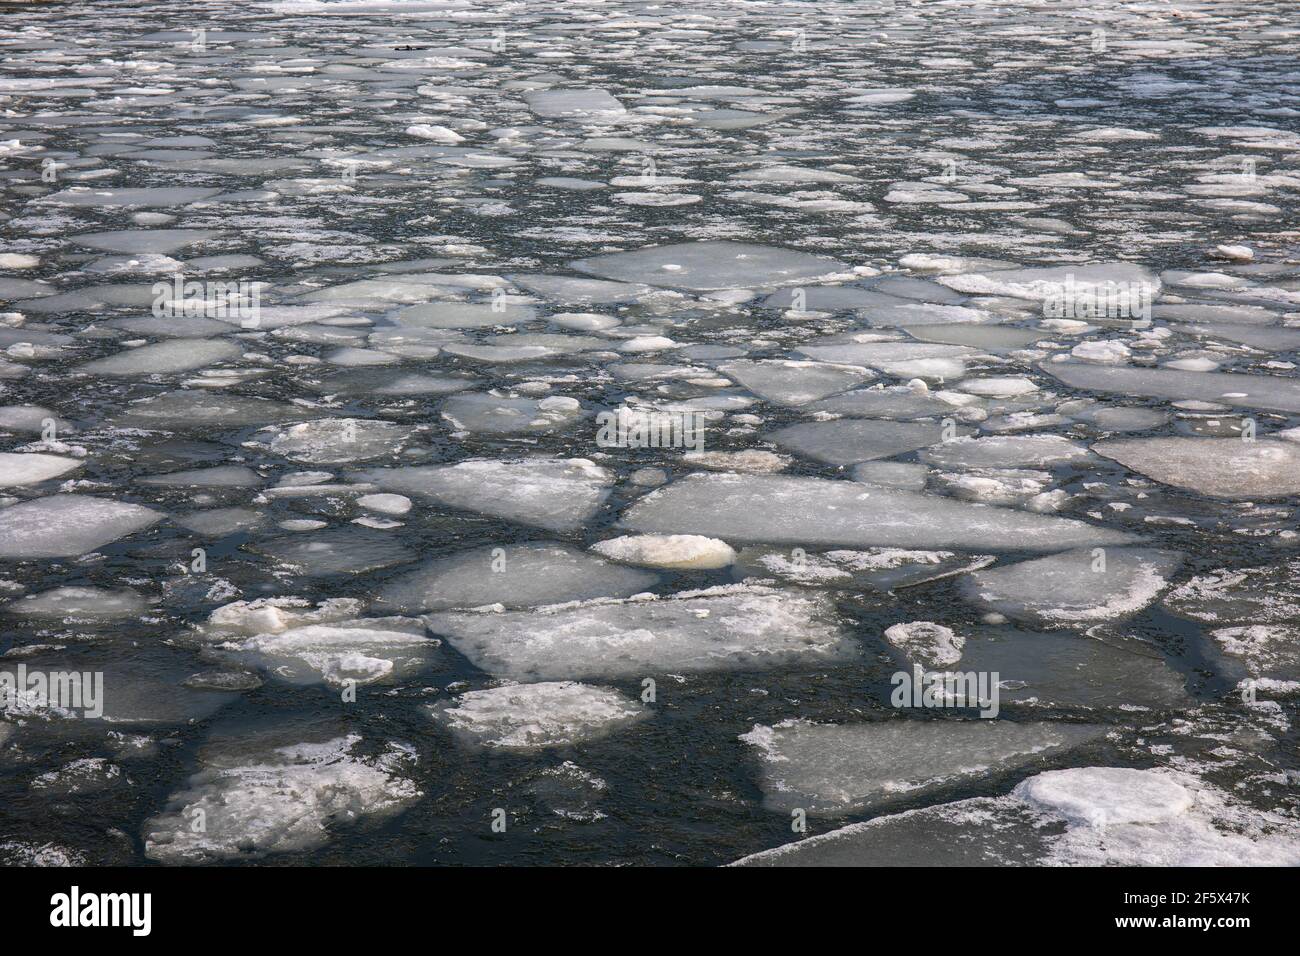 Ice floes on Hietalahti Bay in Helsinki, Finland Stock Photo